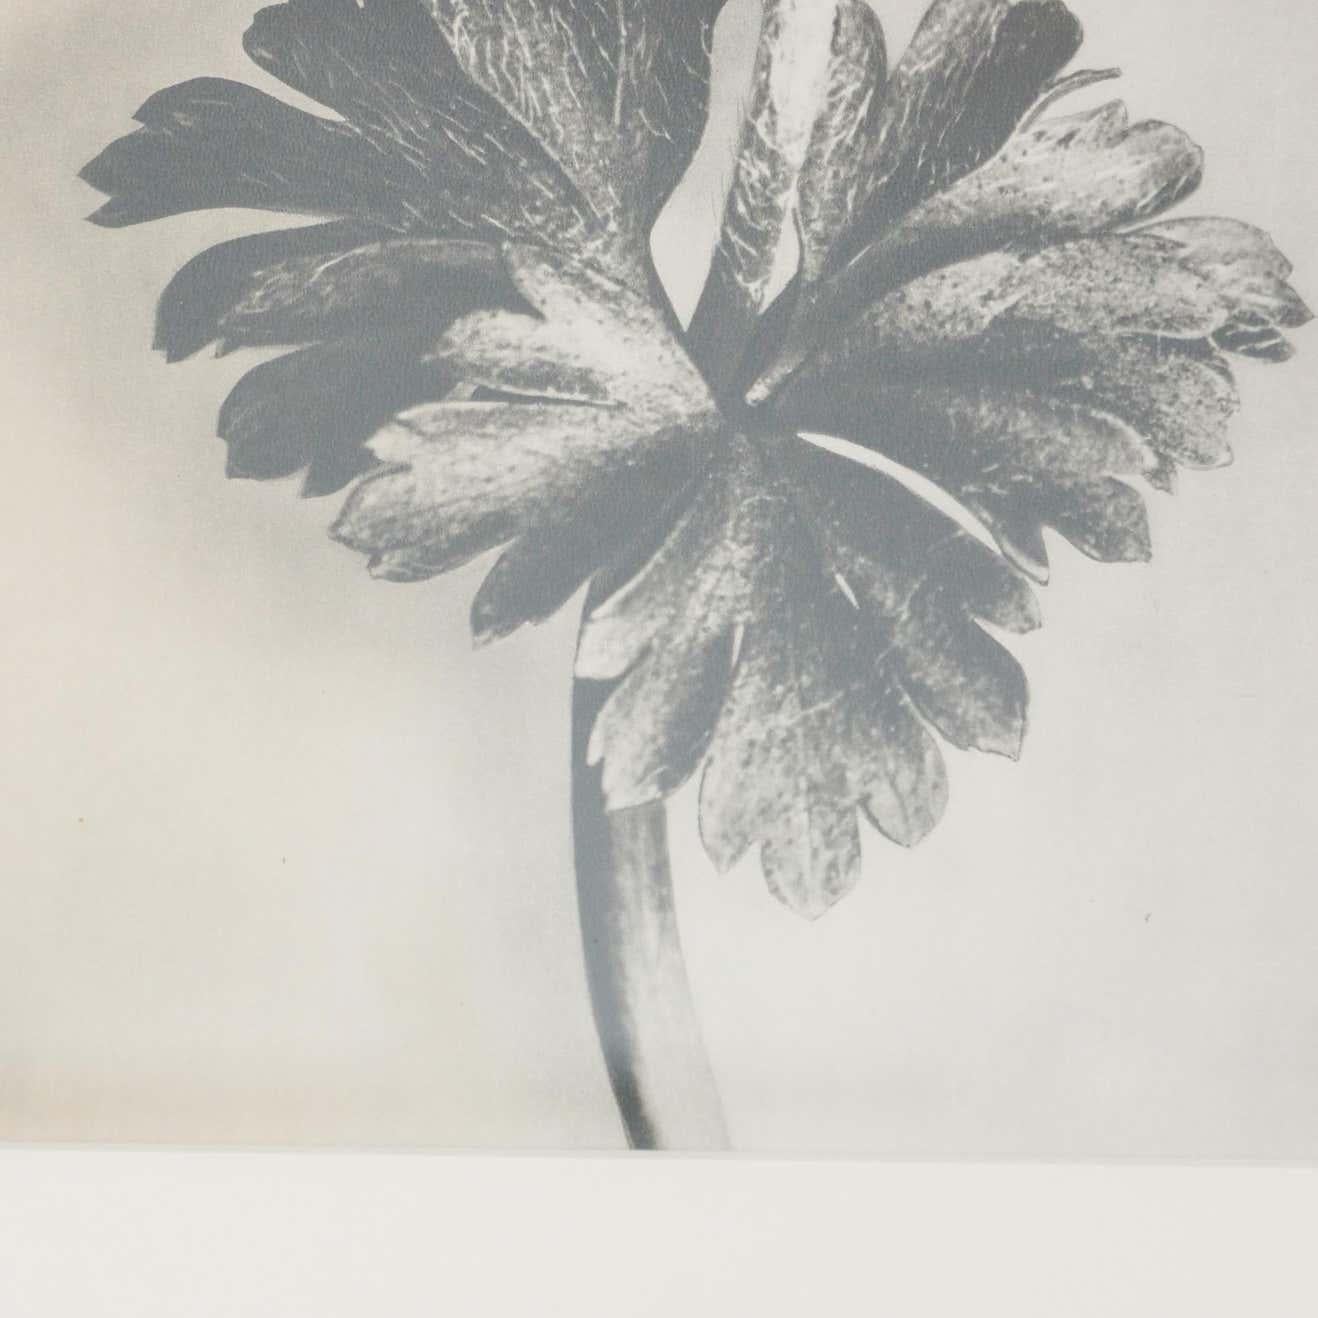 Paper Set of 3 Karl Blossfeldt Black White Flower Photogravure Botanic Photography For Sale